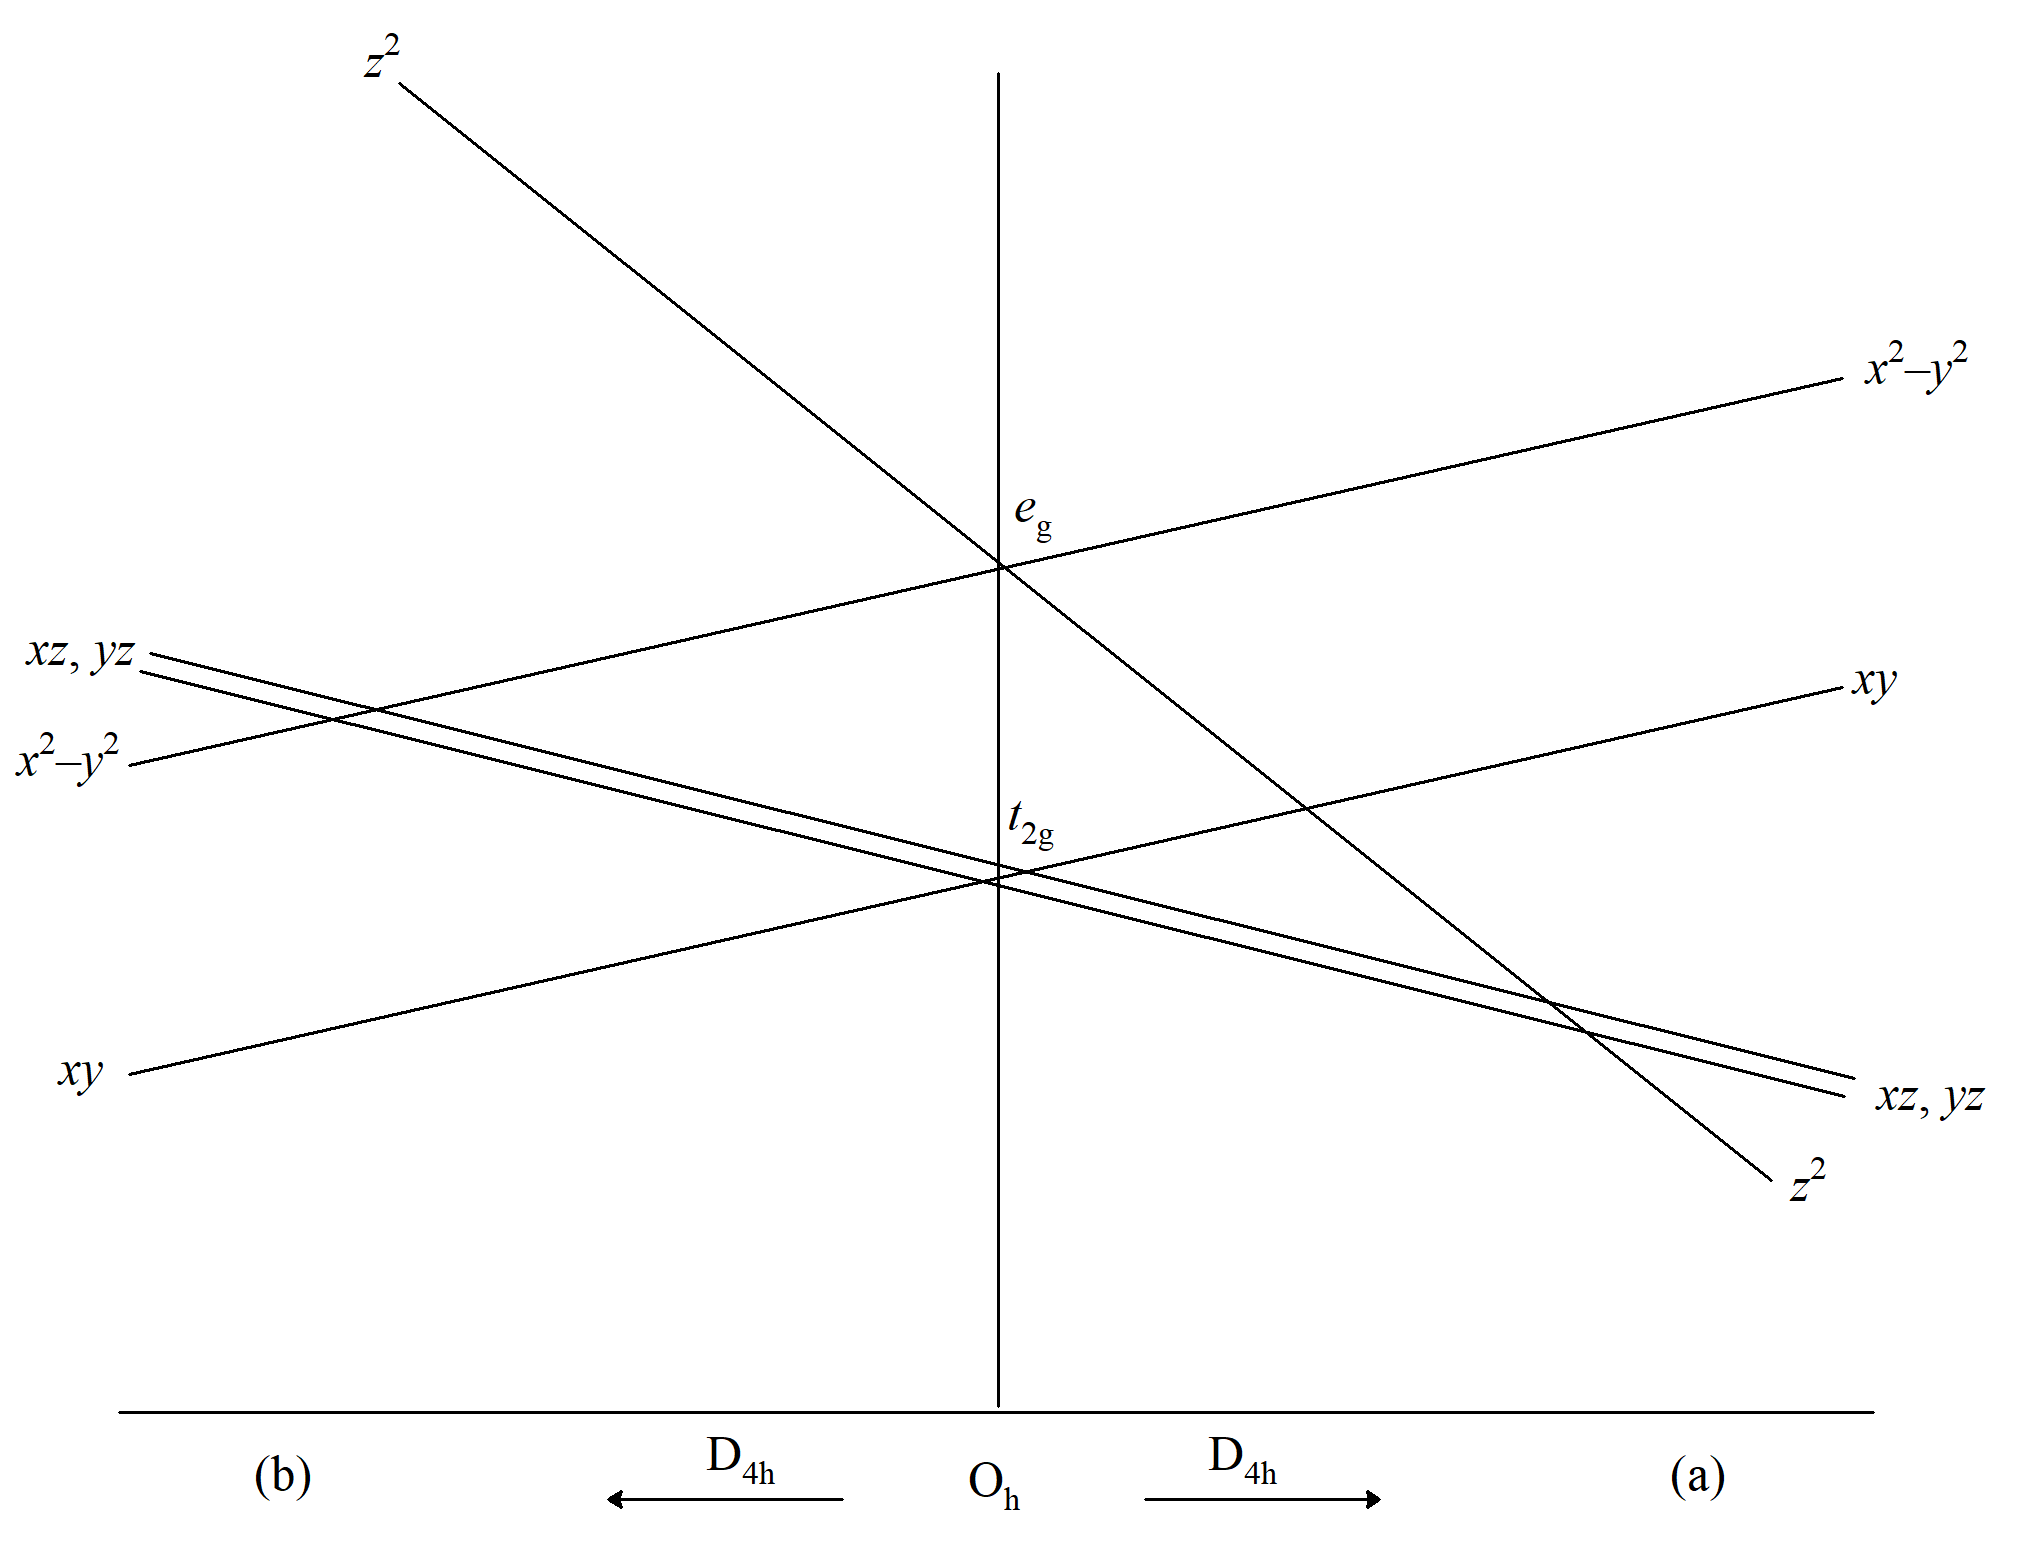 Wpływ zniekształcenia tetragonalnego na poziomy energii w polu oktaedrycznym, (a) wydłużenie wzdłuż osi z; (b) wydłużenie w płaszczyźnie xy.